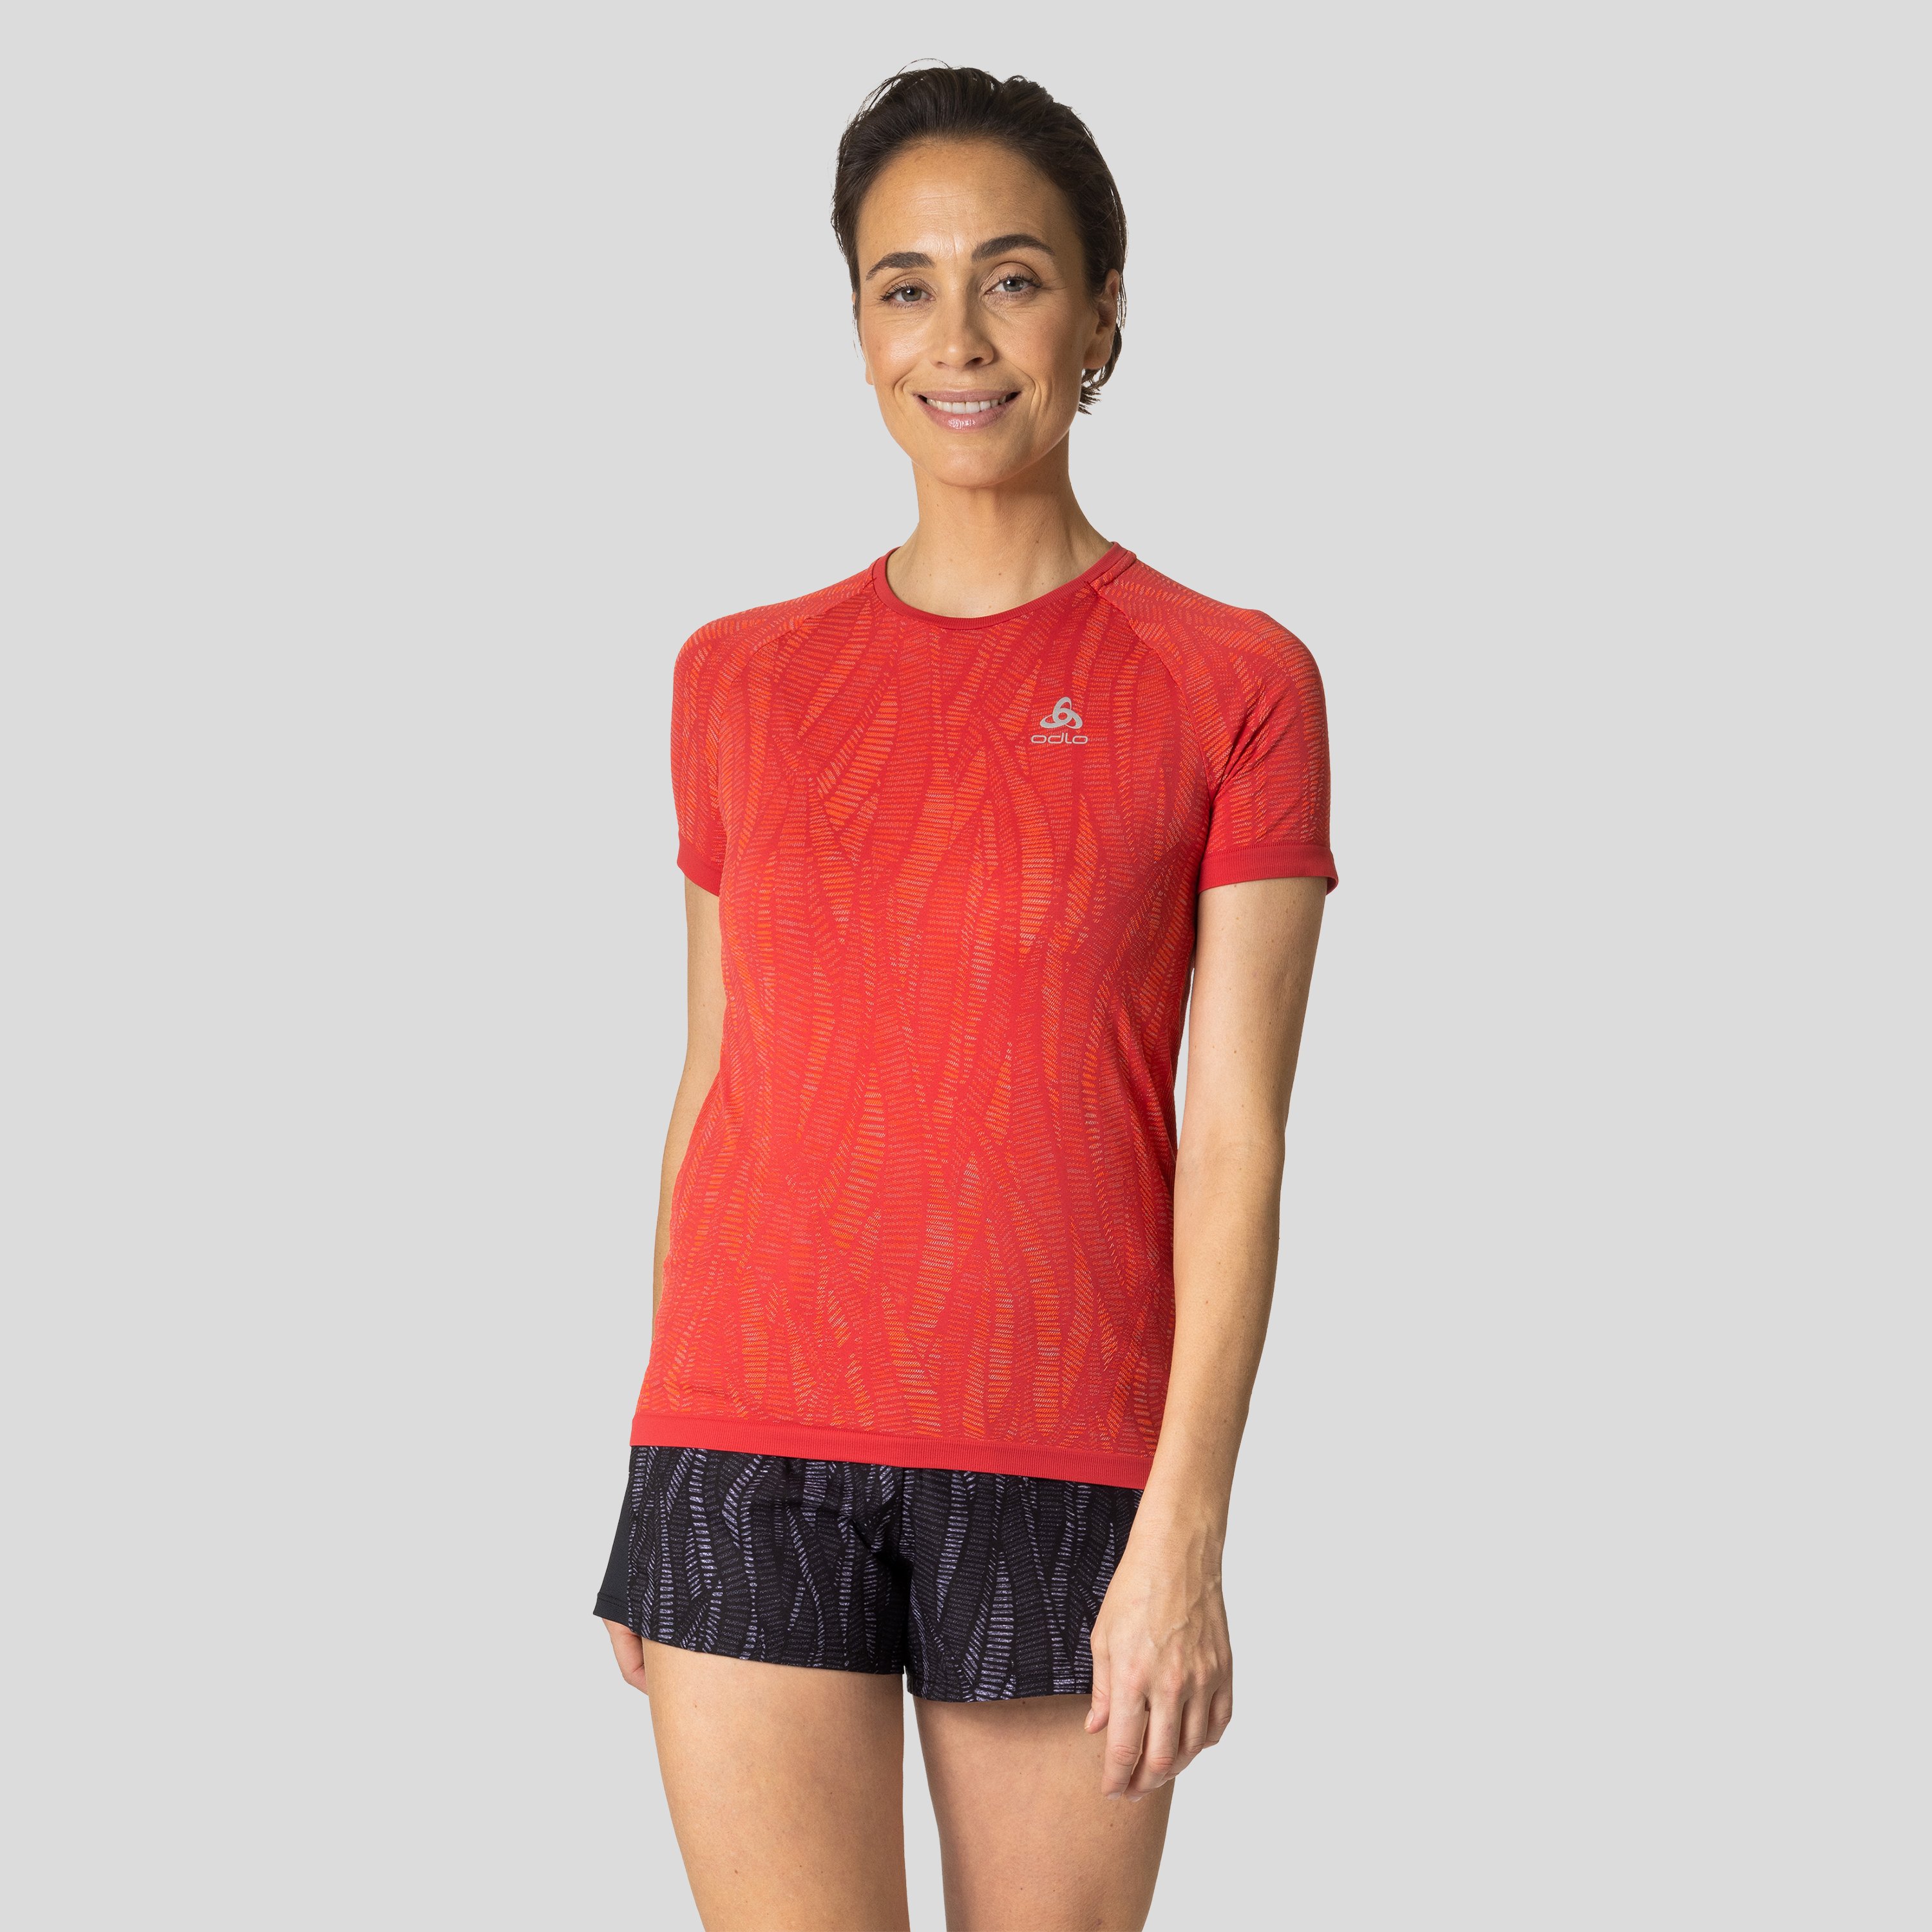 ODLO Zeroweight Ceramicool Laufshirt für Damen, XL, rot